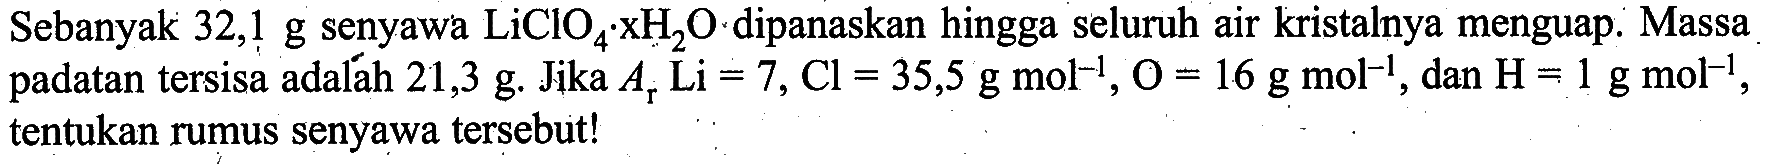 Sebanyak 32,1 g senyawa LiClO4xH2O dipanaskan hingga seluruh air kristalnya menguap. Massa padatan tersisa adalah 21,3 g. Jika Ar Li=7, Cl=35,5 g mol^(-1), O=16 g mol^(-1), dan H=1 g mol^(-1), tentukan rumus senyawa tersebut!